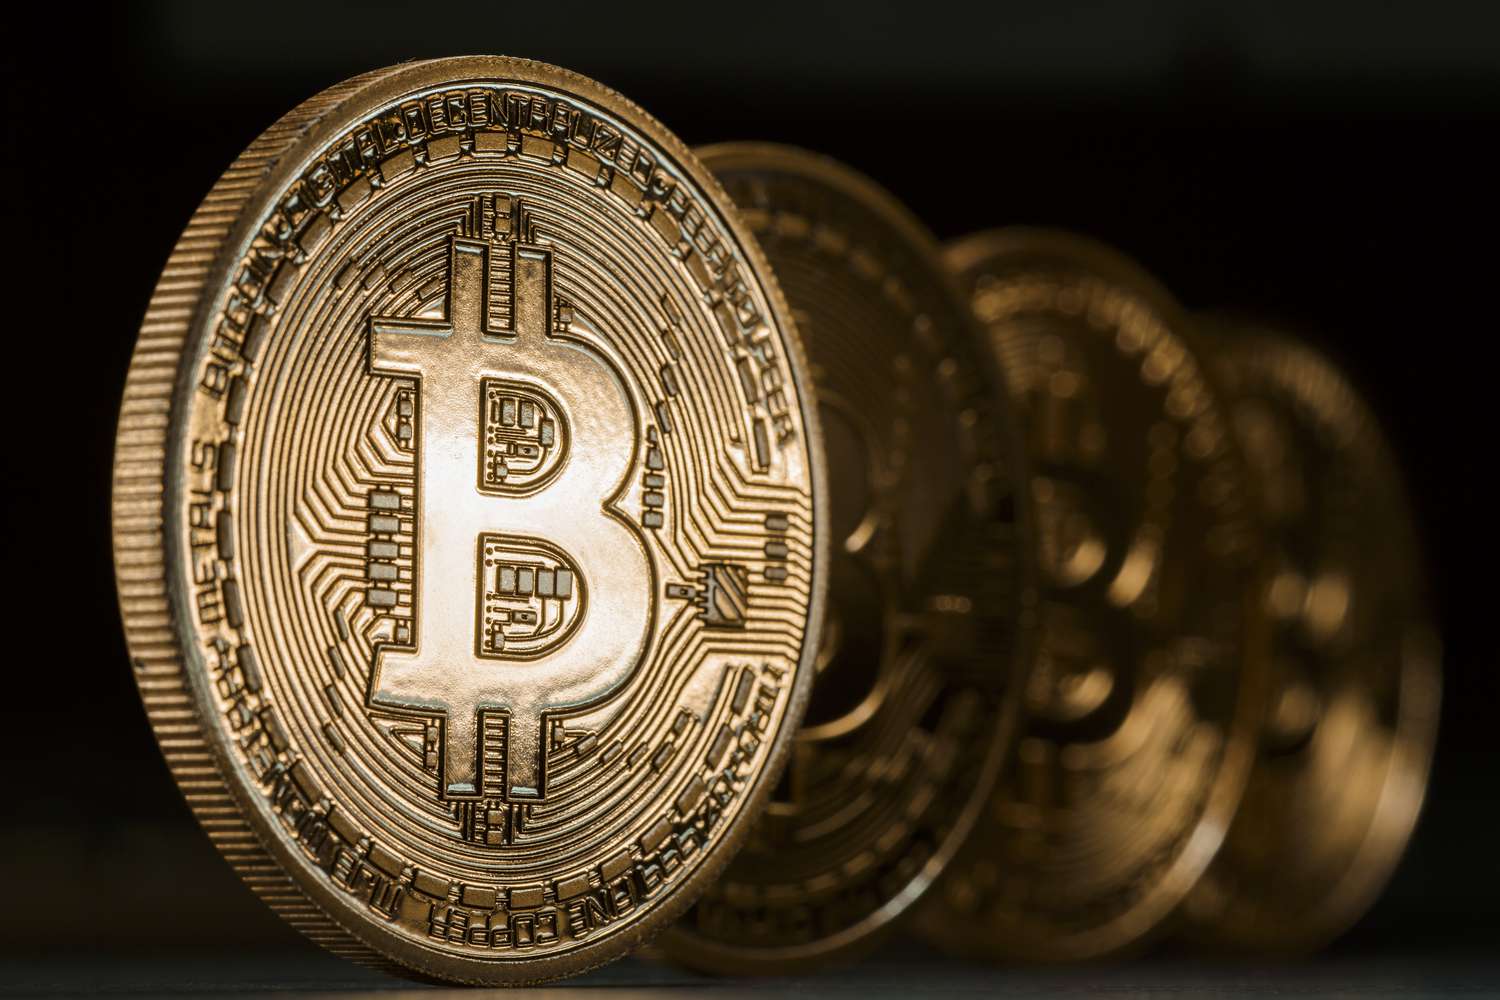 Comprar o vender ¿Qué hacer con el Bitcoin?